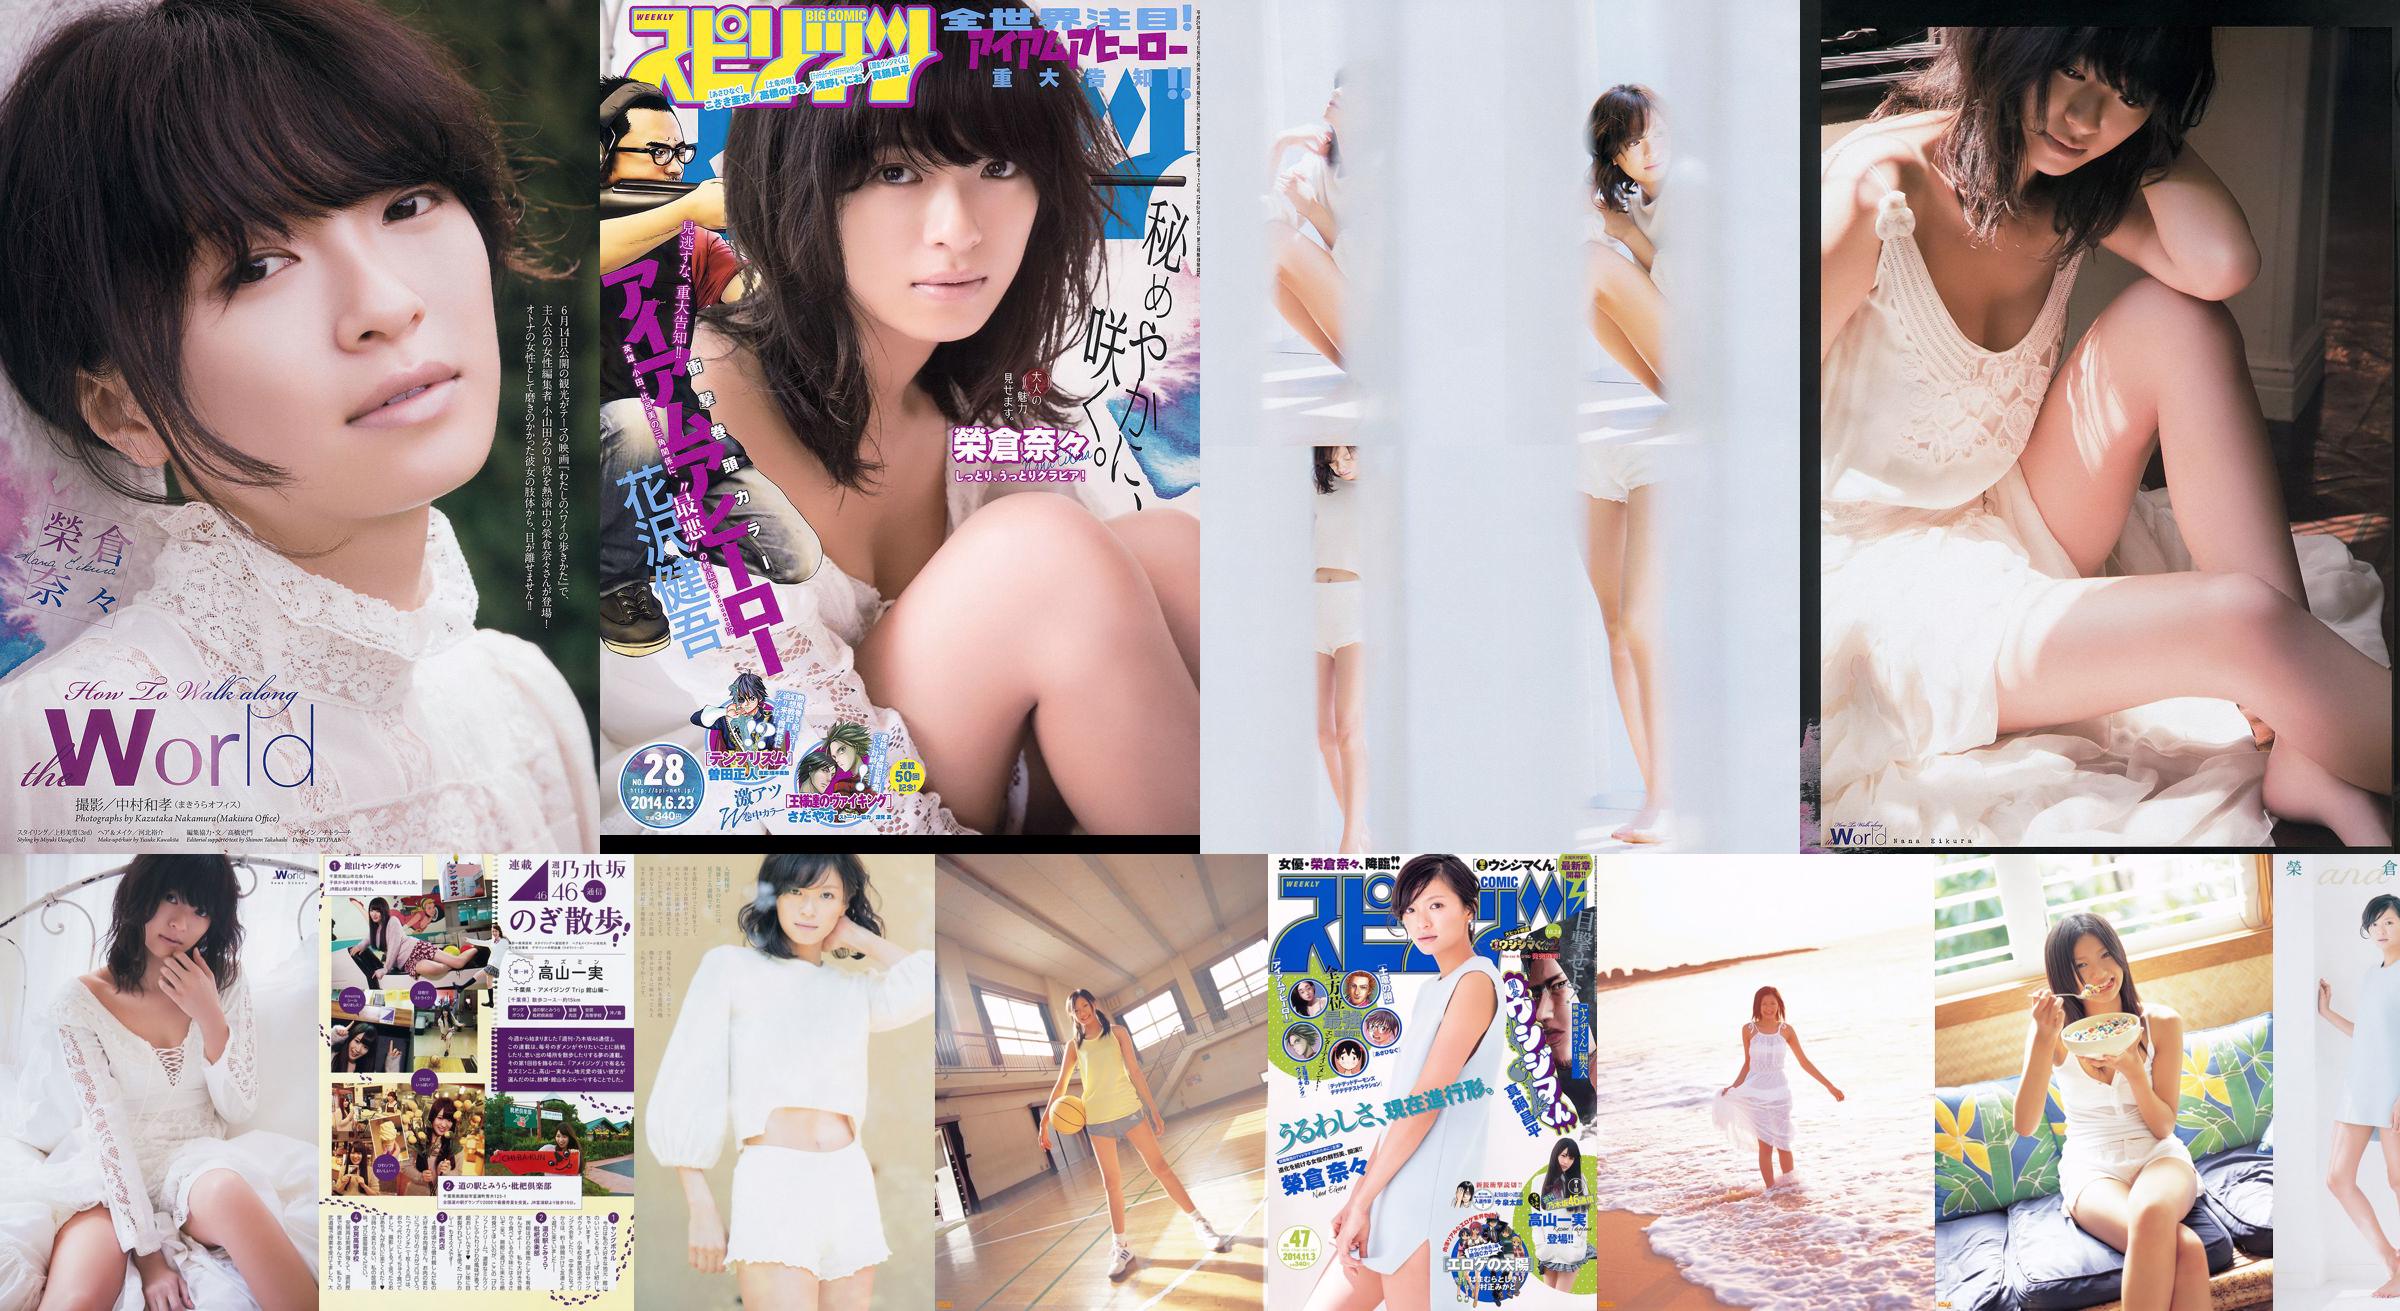 [Weekly Big Comic Spirits] Eikura Nana 2014 No.47 Photo Magazine No.0662e8 Page 3